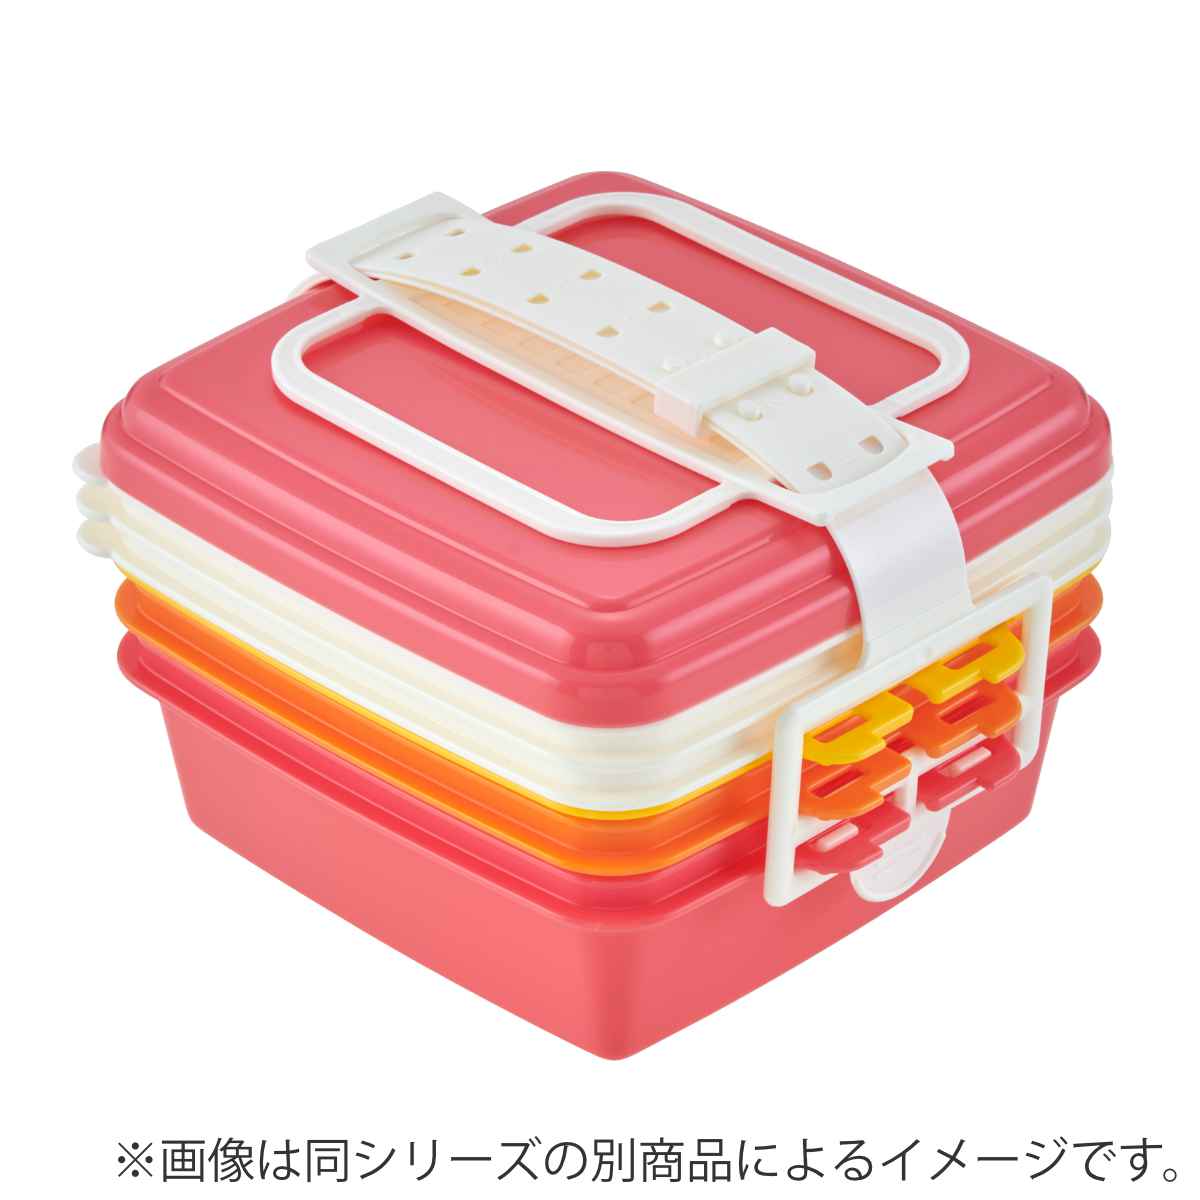 お弁当箱 ピクニックケース 角型 小 3段×920ml スヌーピー